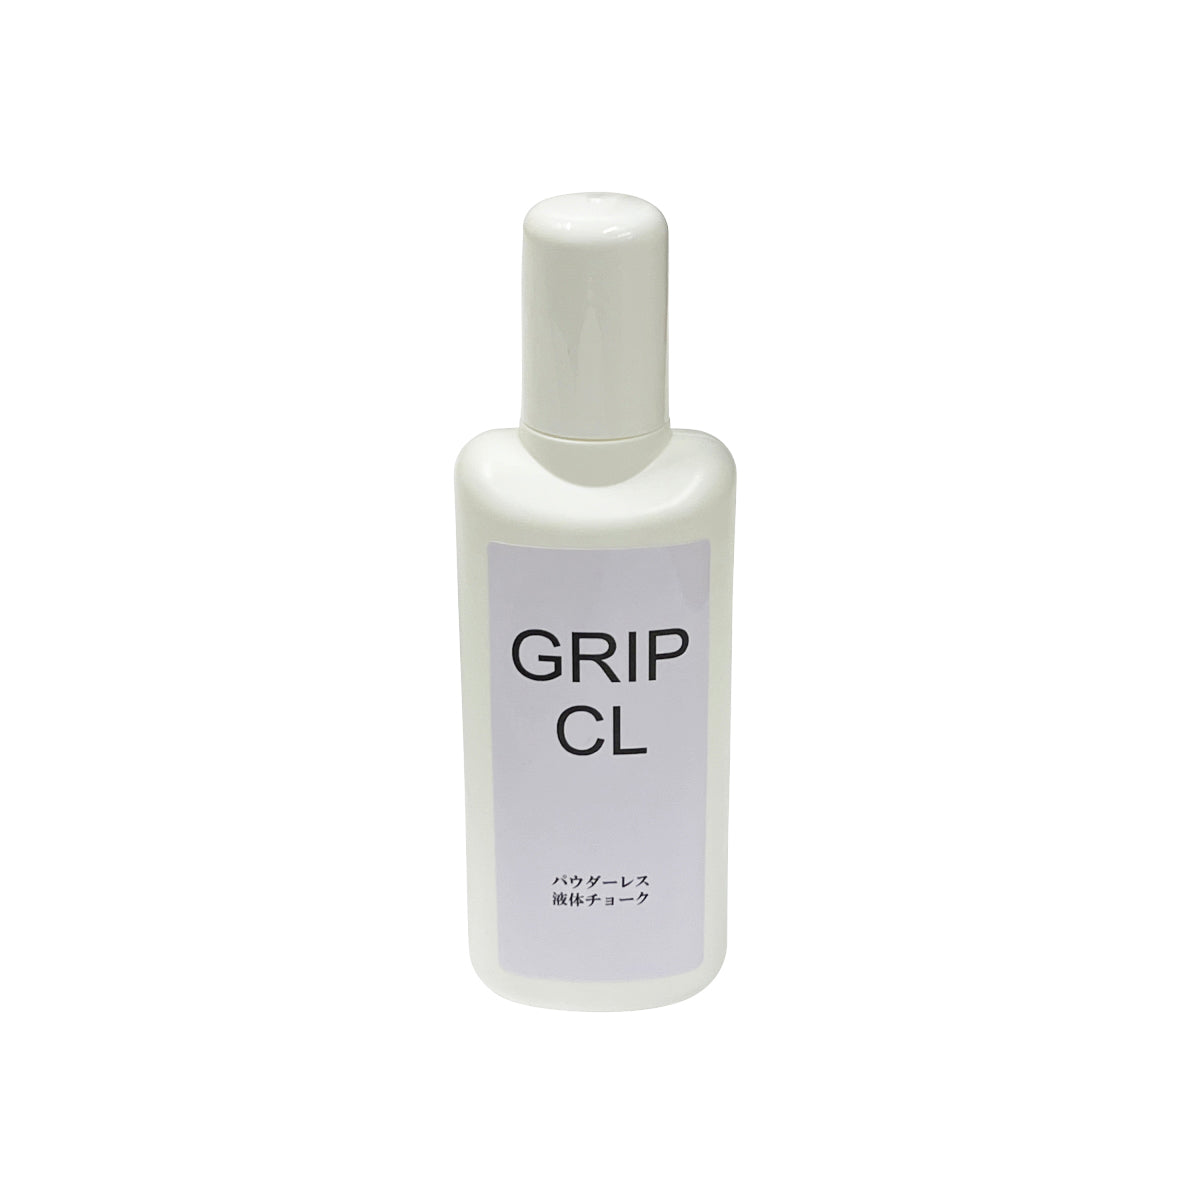 【大阪店ロッカー5】液体チョーク「GRIP CL」